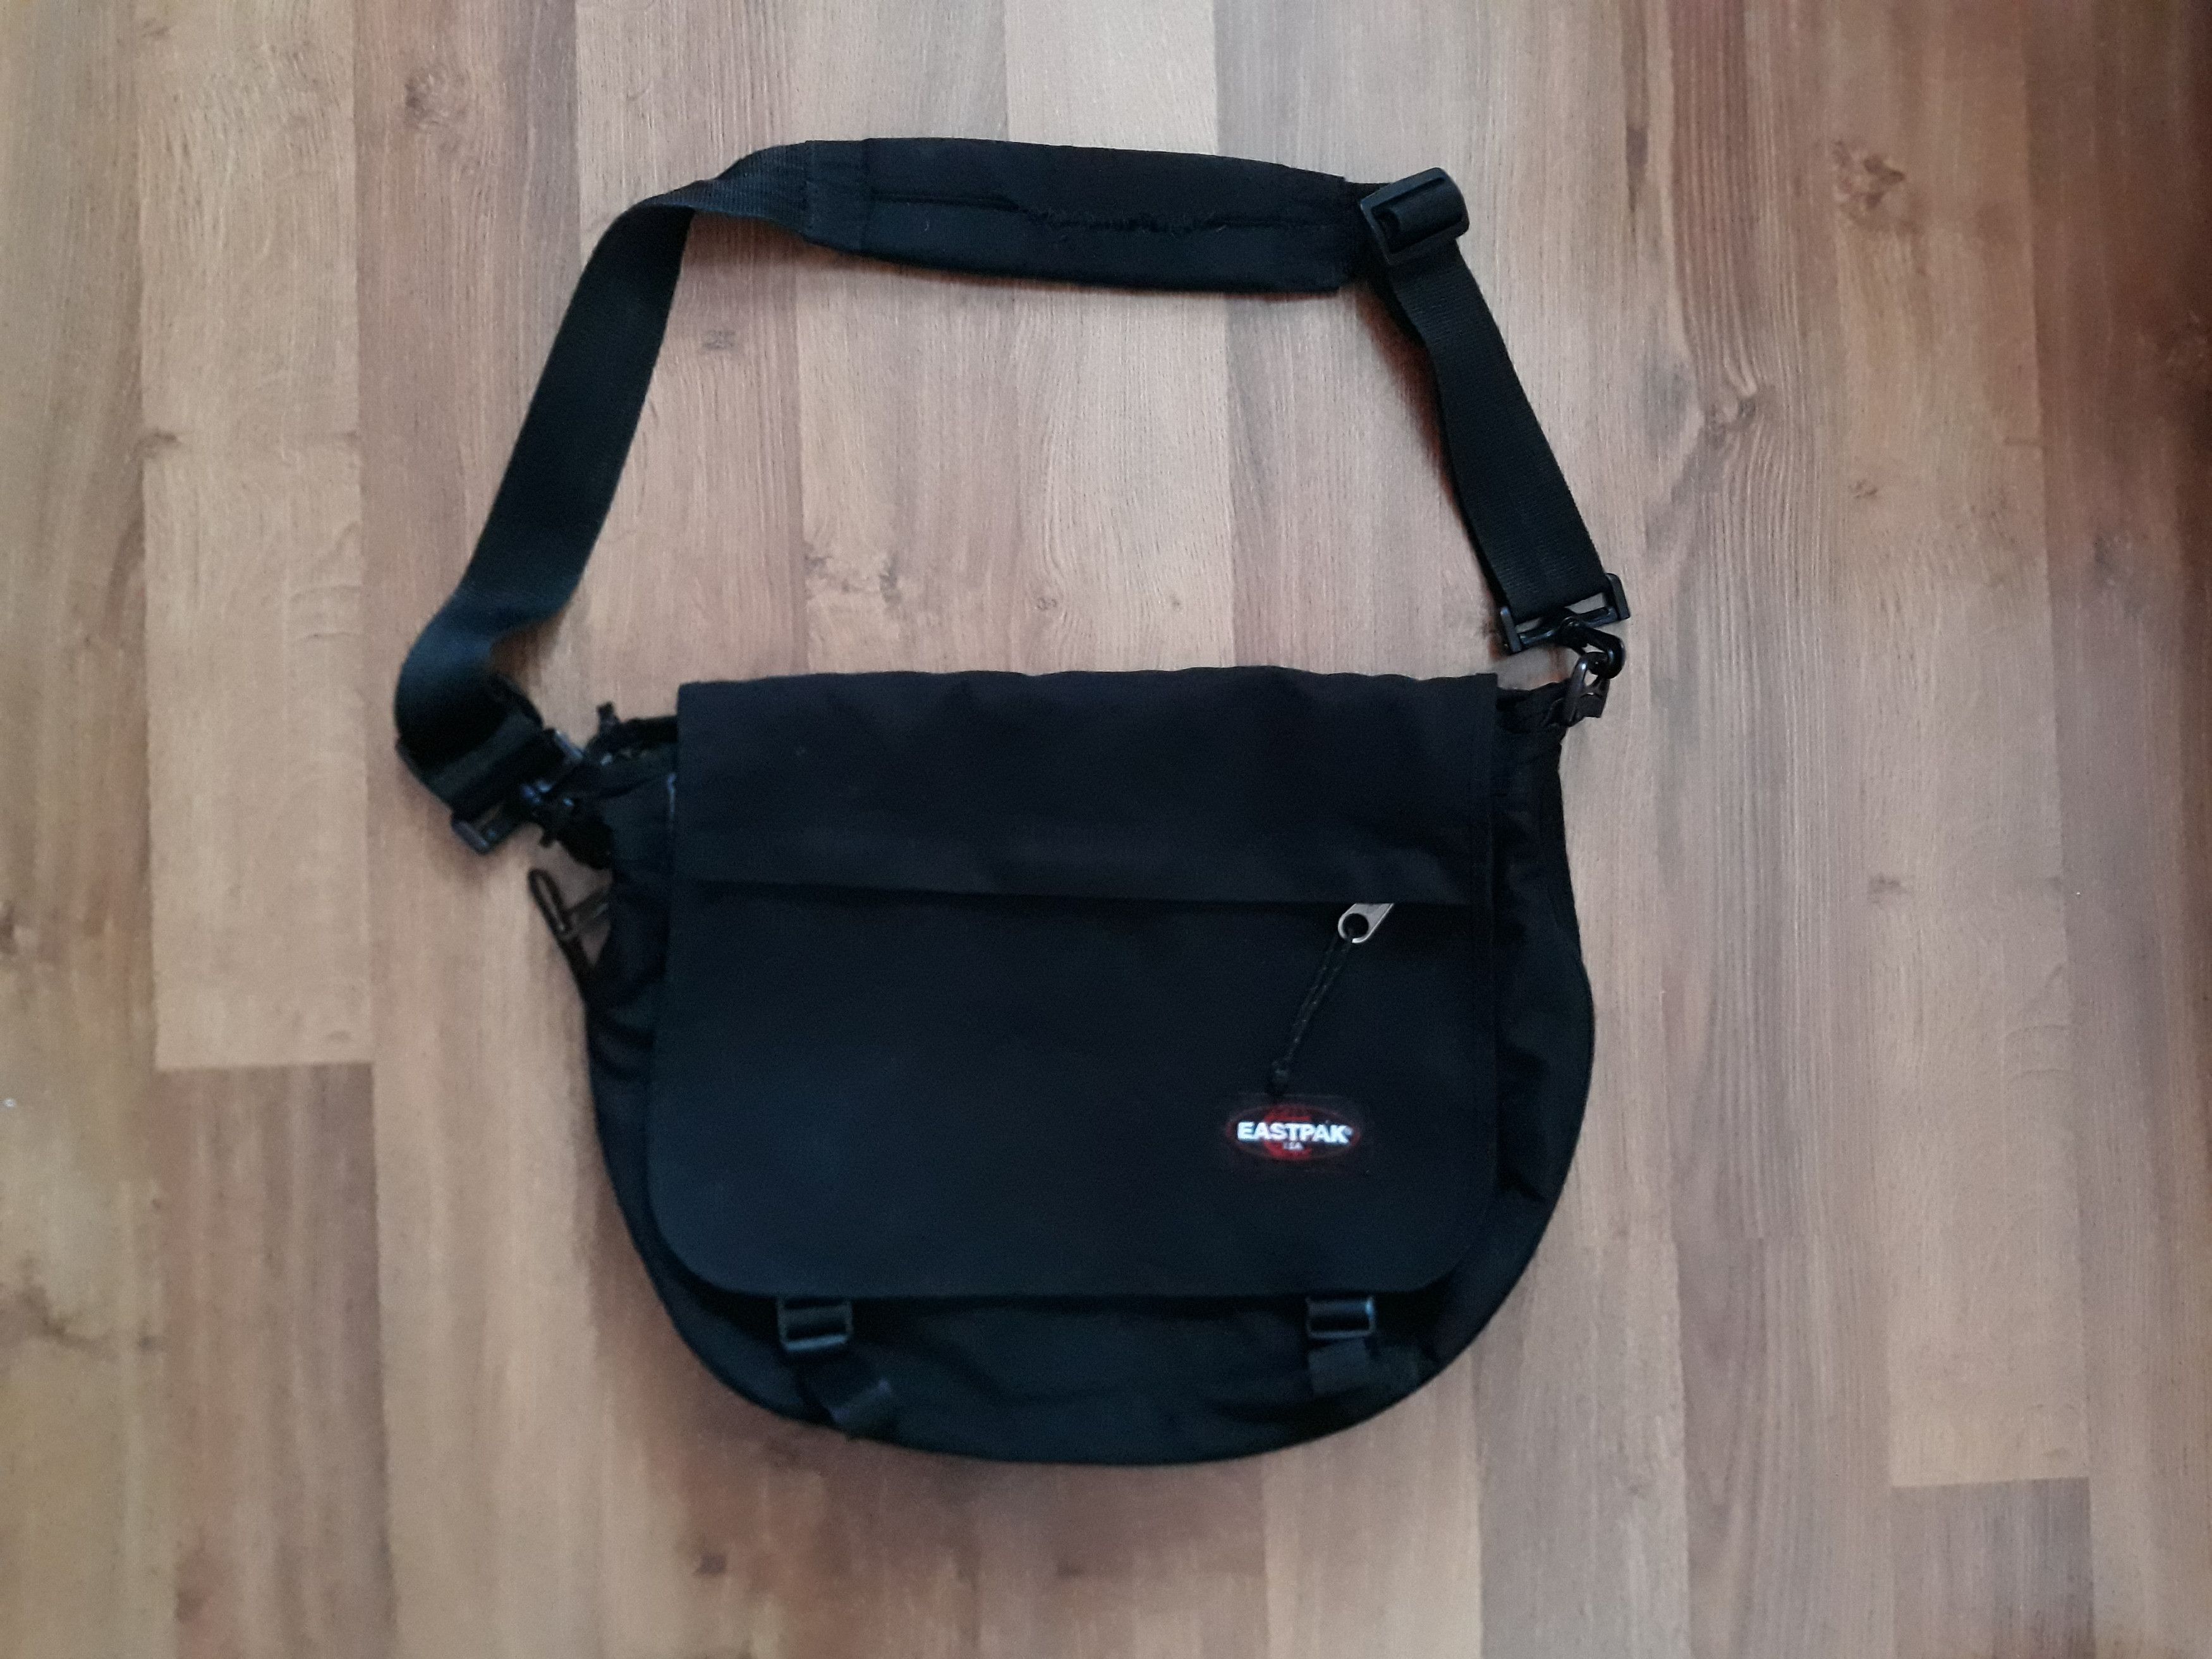 Pre-owned Eastpak Messenger Bag In Black